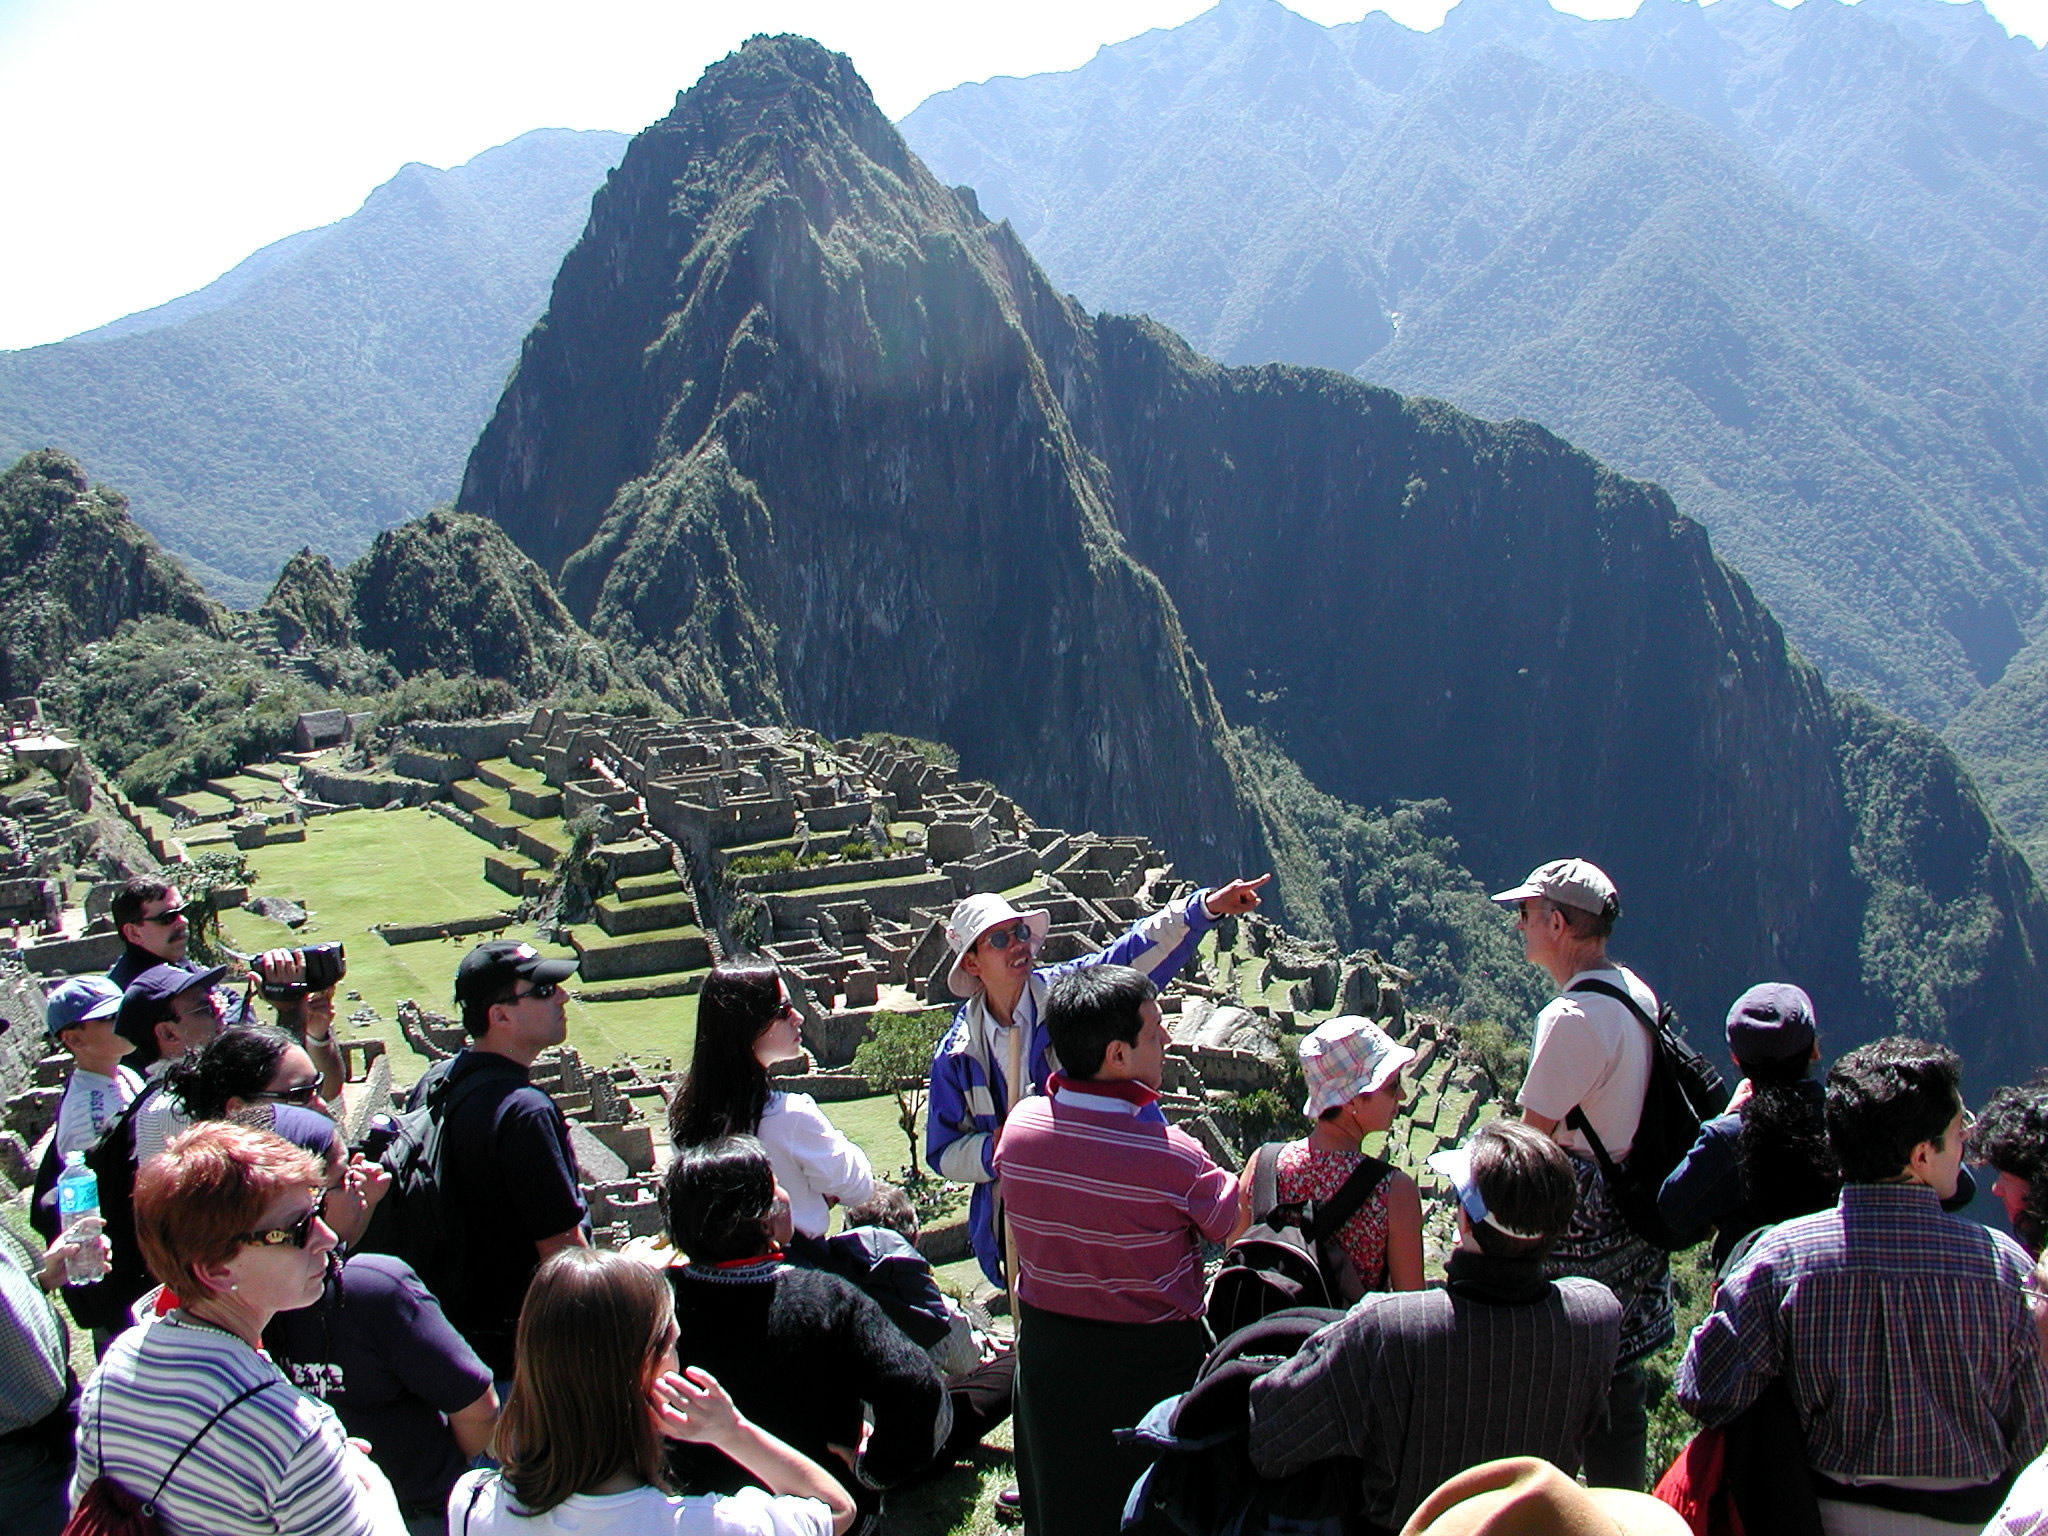 Machu Picchu Tour Guide, Private Guide Machu Picchu, Get Your Guide Machu Picchu - Prices - Cost